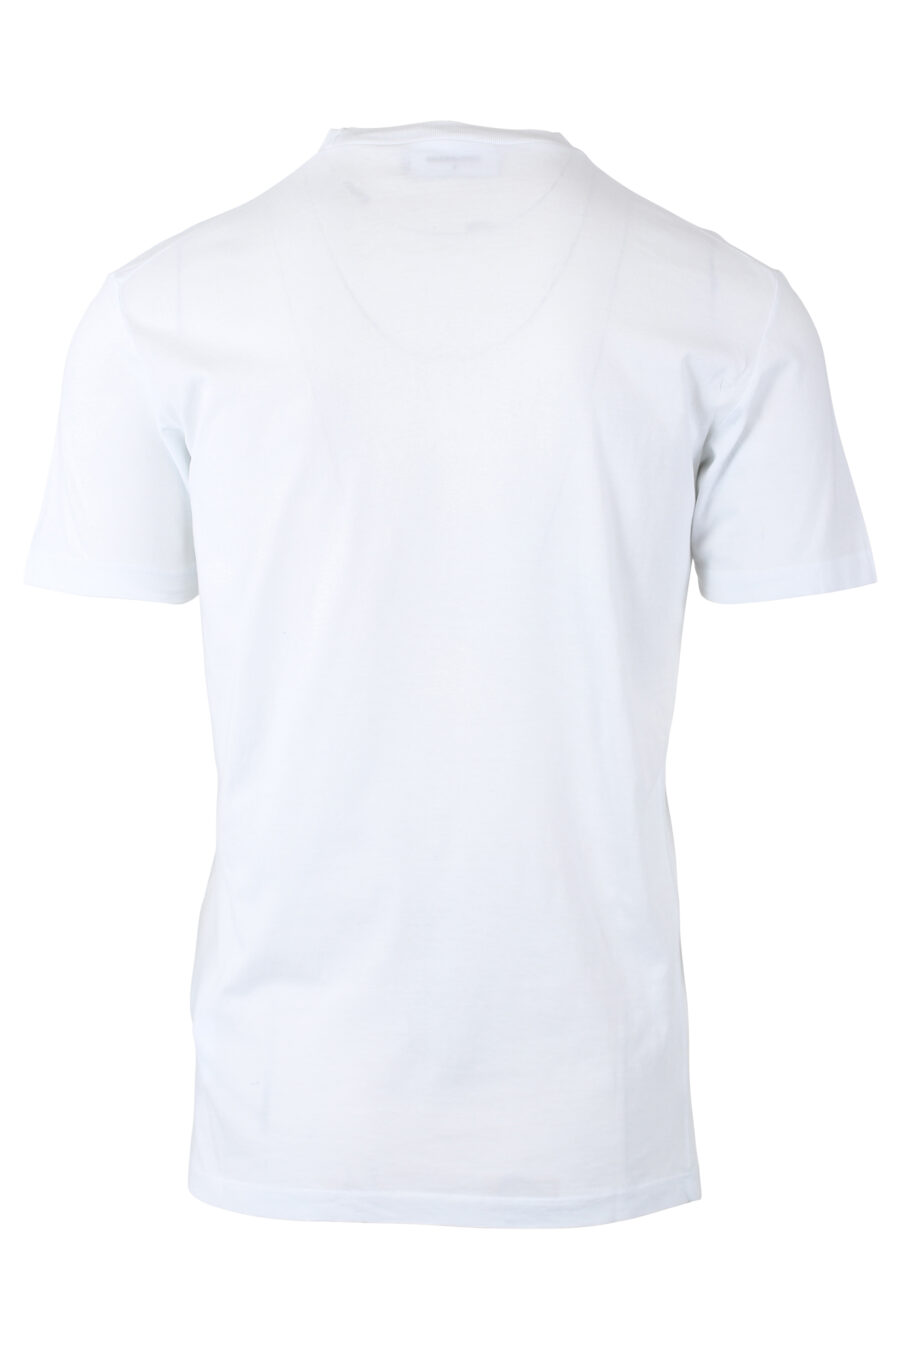 Camiseta blanca con maxilogo "denim" - IMG 1153